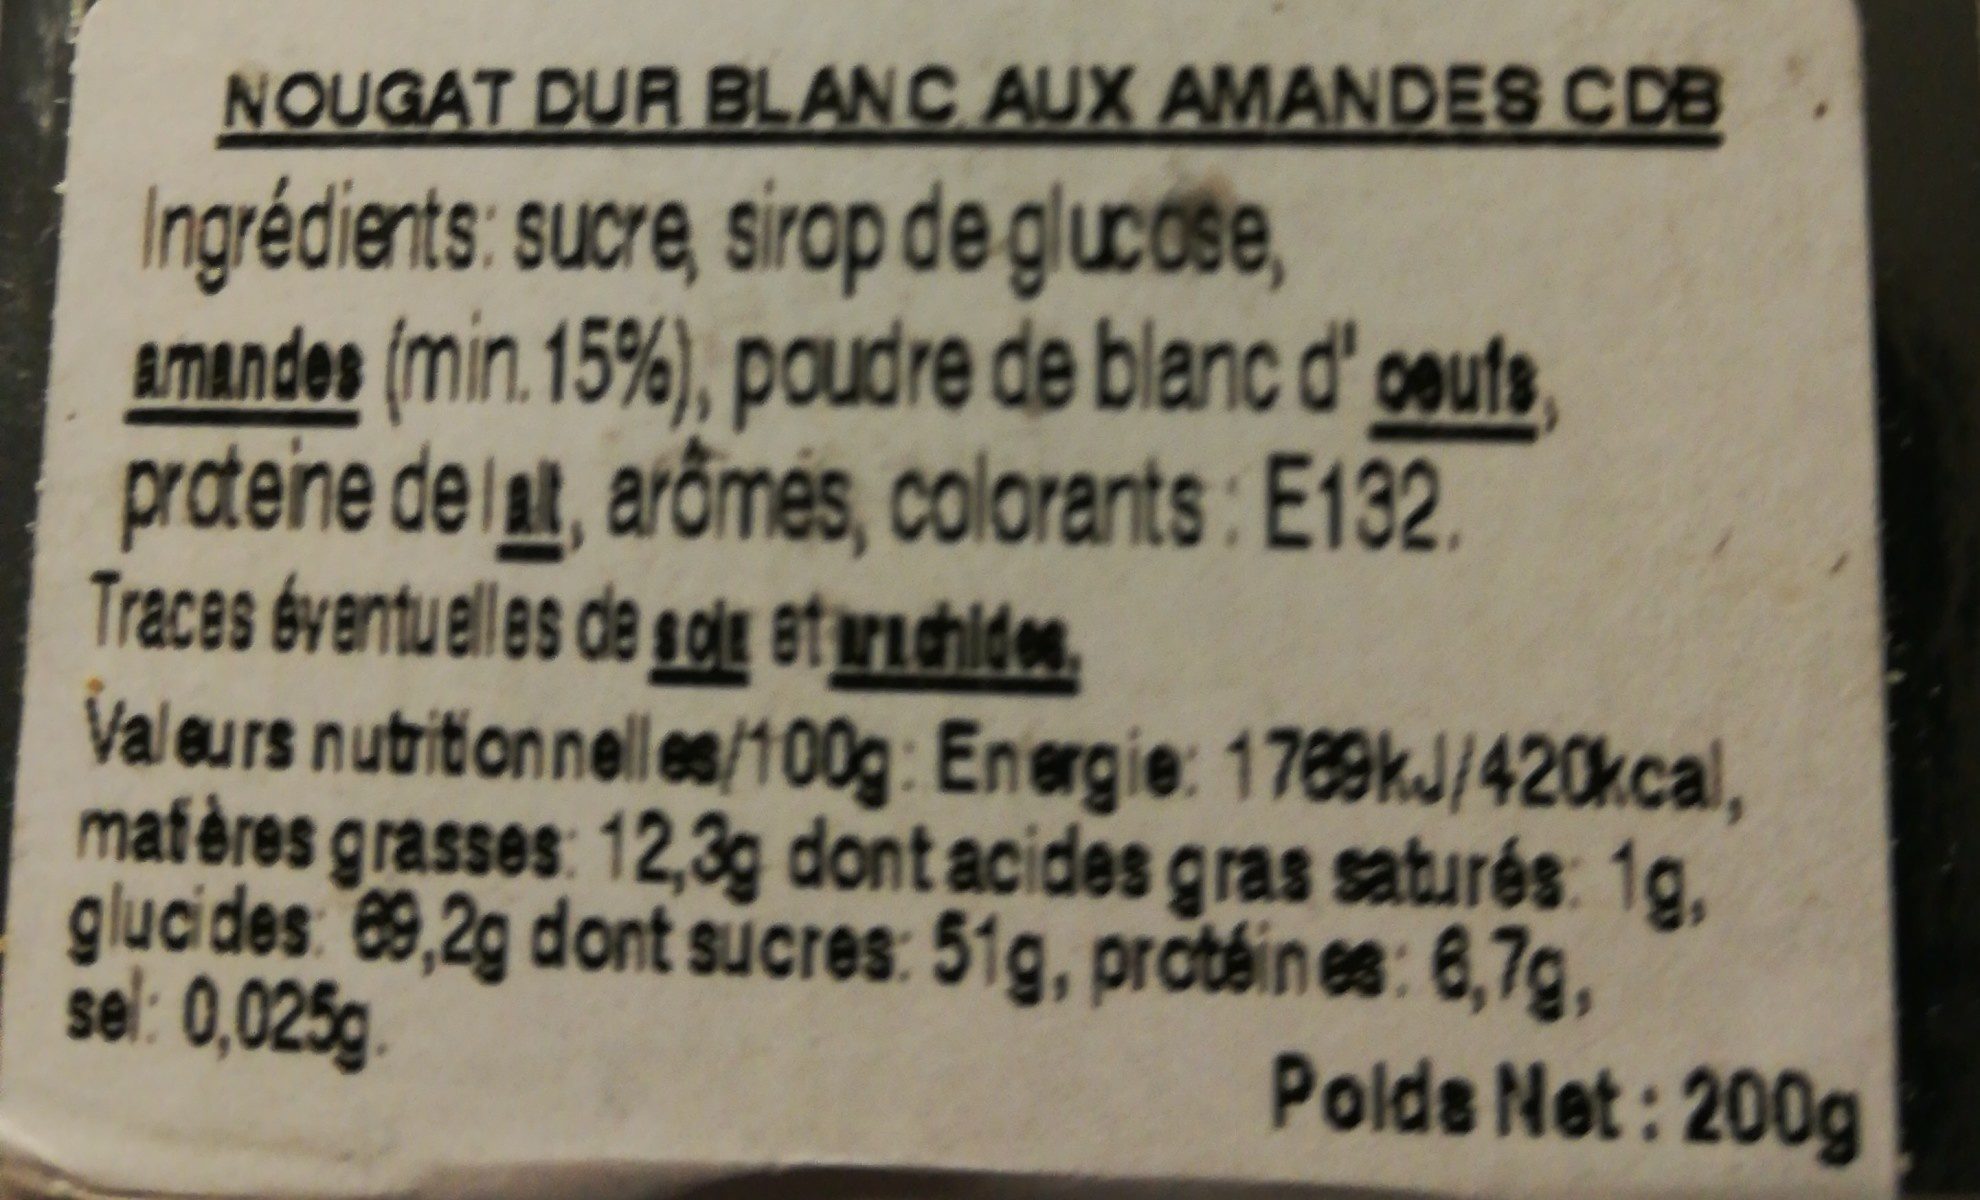 Nougat dur blanc baux amandes - Ingredients - fr